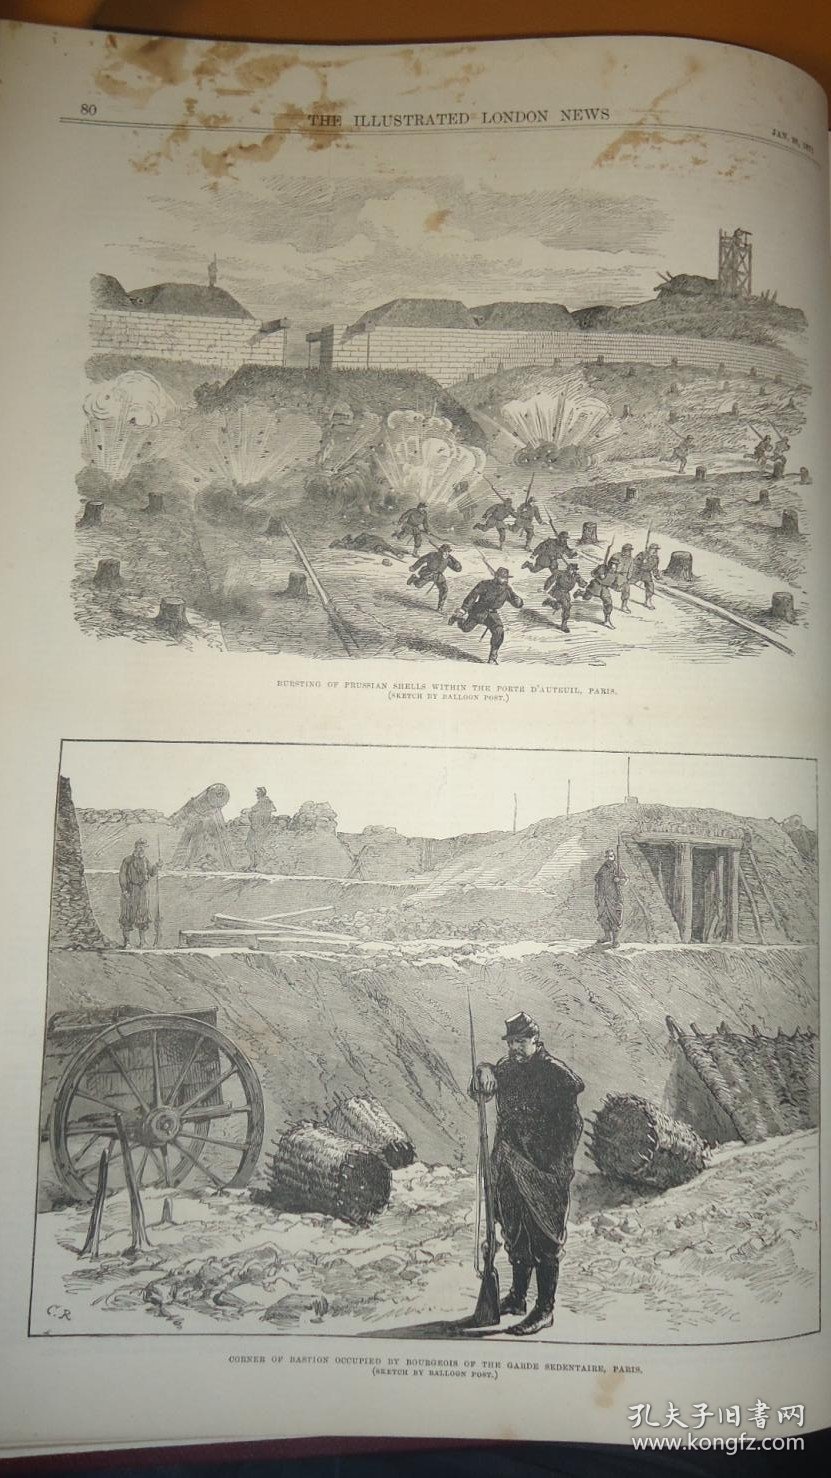 【补图1】1871年 (1-6月) Illustrated London News 《伦敦新闻画报》1871年 (1-6月)合订 普法战争 及 巴黎公社